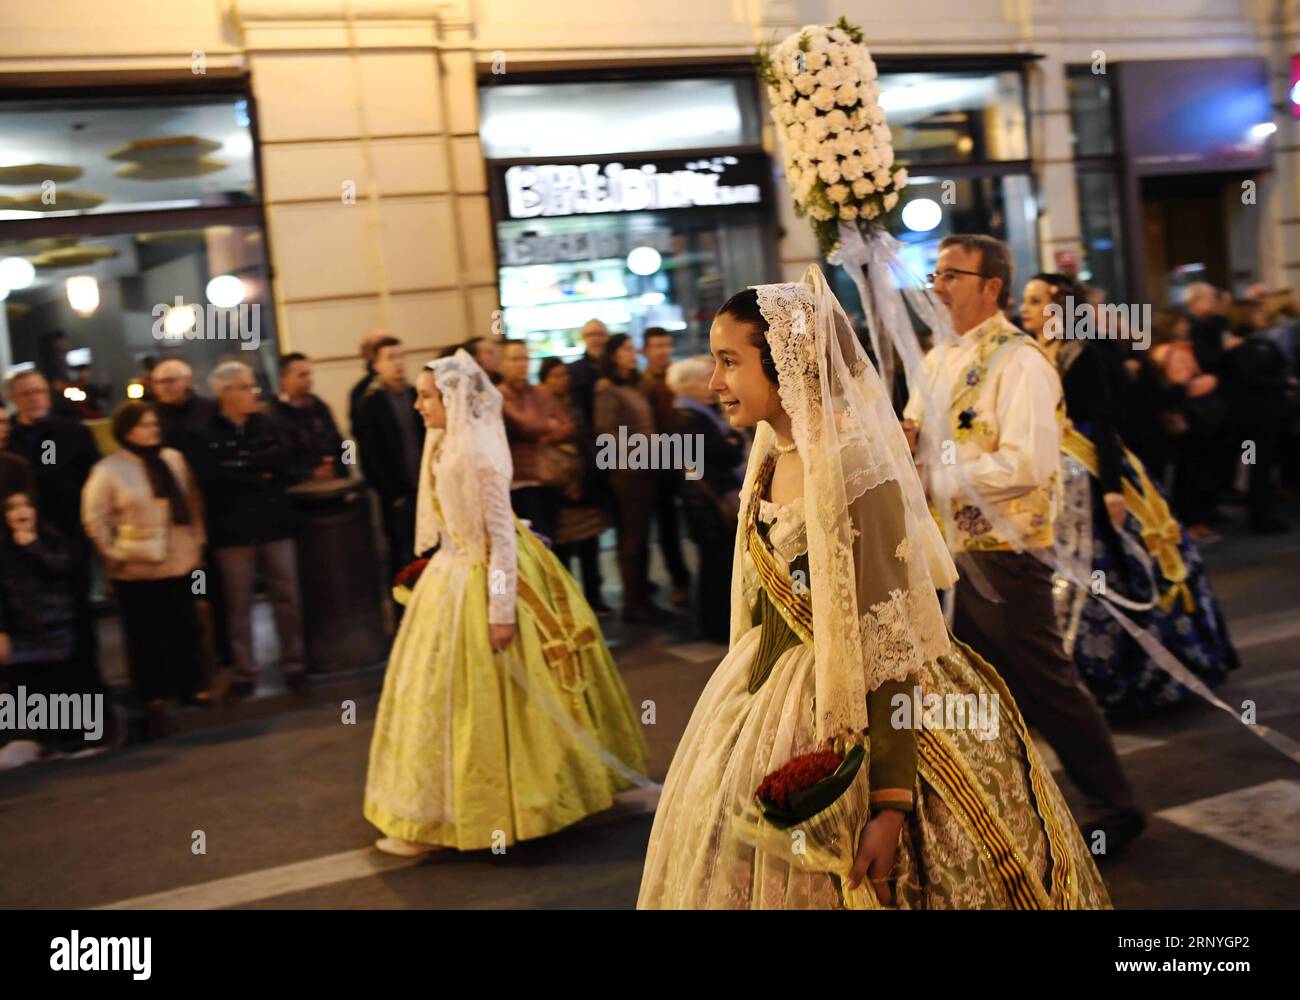 (180319) -- VALENCIA, 19. März 2018 -- Menschen in traditioneller Kleidung nehmen am 18. März 2018 an der Fallas Festival Parade in den Straßen von Valencia, Spanien, Teil. Das Fallas Festival ist ein traditionelles fest mit einer Ausstellung von gigantischen Puppen, gut gekleideten Paraden und Feuerwerken in Valencia, Spanien. )(yk) SPANIEN-VALENCIA-DAS FALLAS FESTIVAL GuoxQiuda PUBLICATIONxNOTxINxCHN Stockfoto